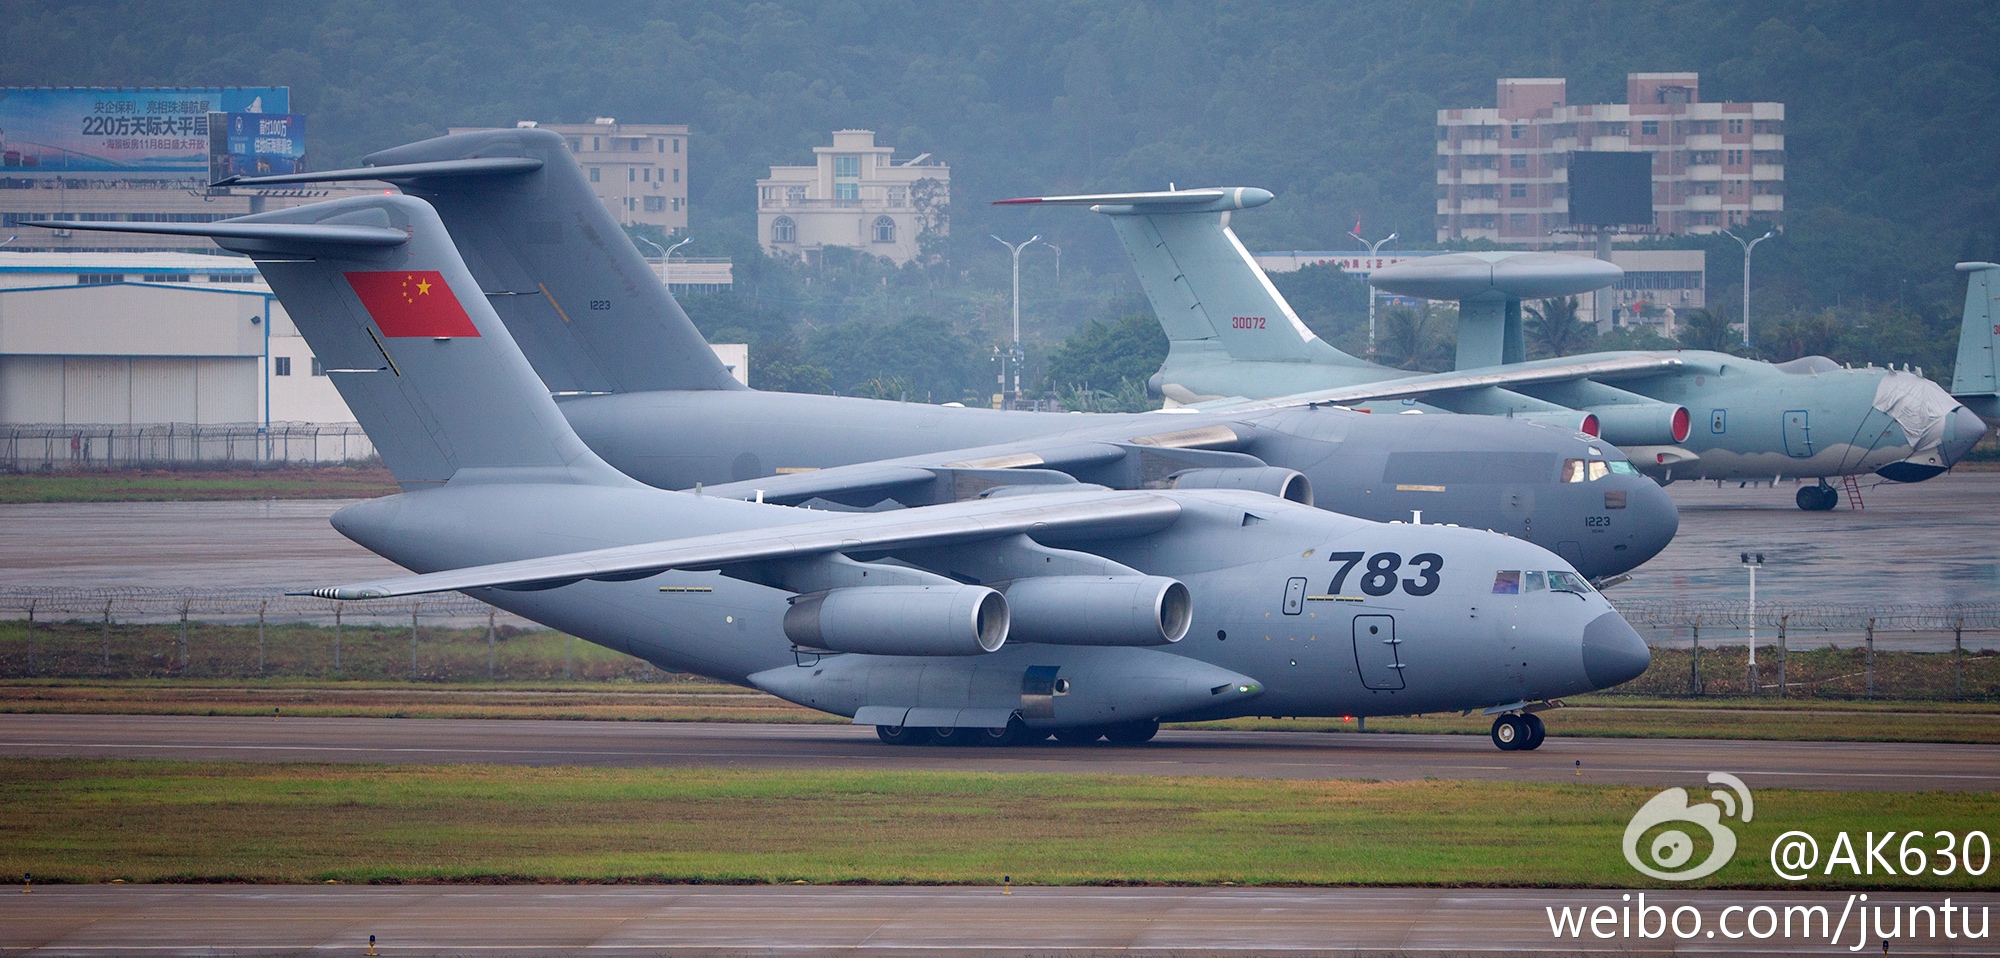 A The Aviationist közölte az érdekes képet: az Y-20-as, a C-17-es és háttérben az Il-76-os bázisú légtérellenőrző